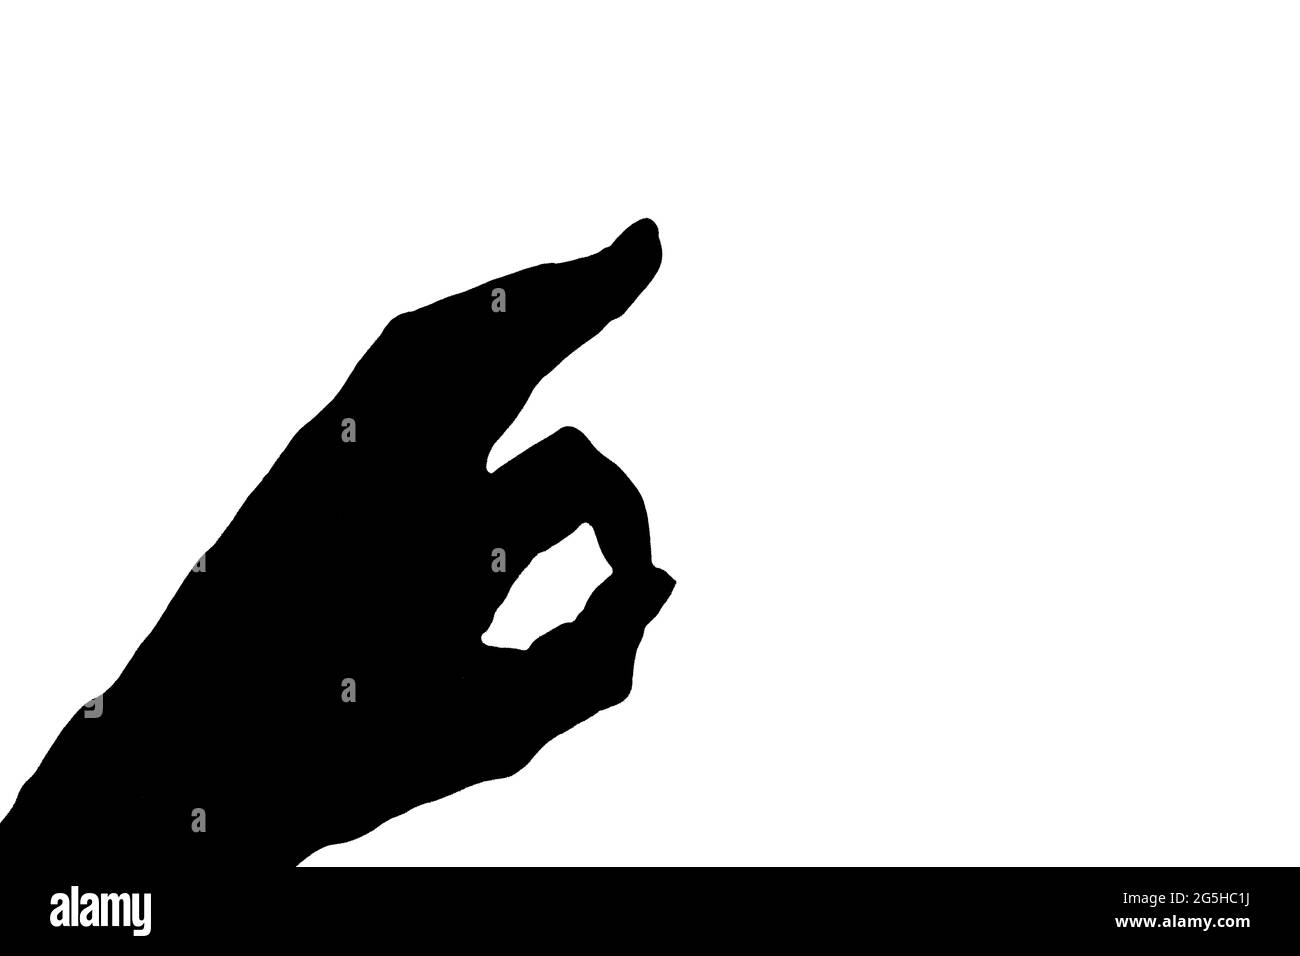 Silhouette ou ombre noire de la main montrant un cercle avec deux doigts ou le signe ok isolé sur fond blanc, gros plan, espace de copie Banque D'Images